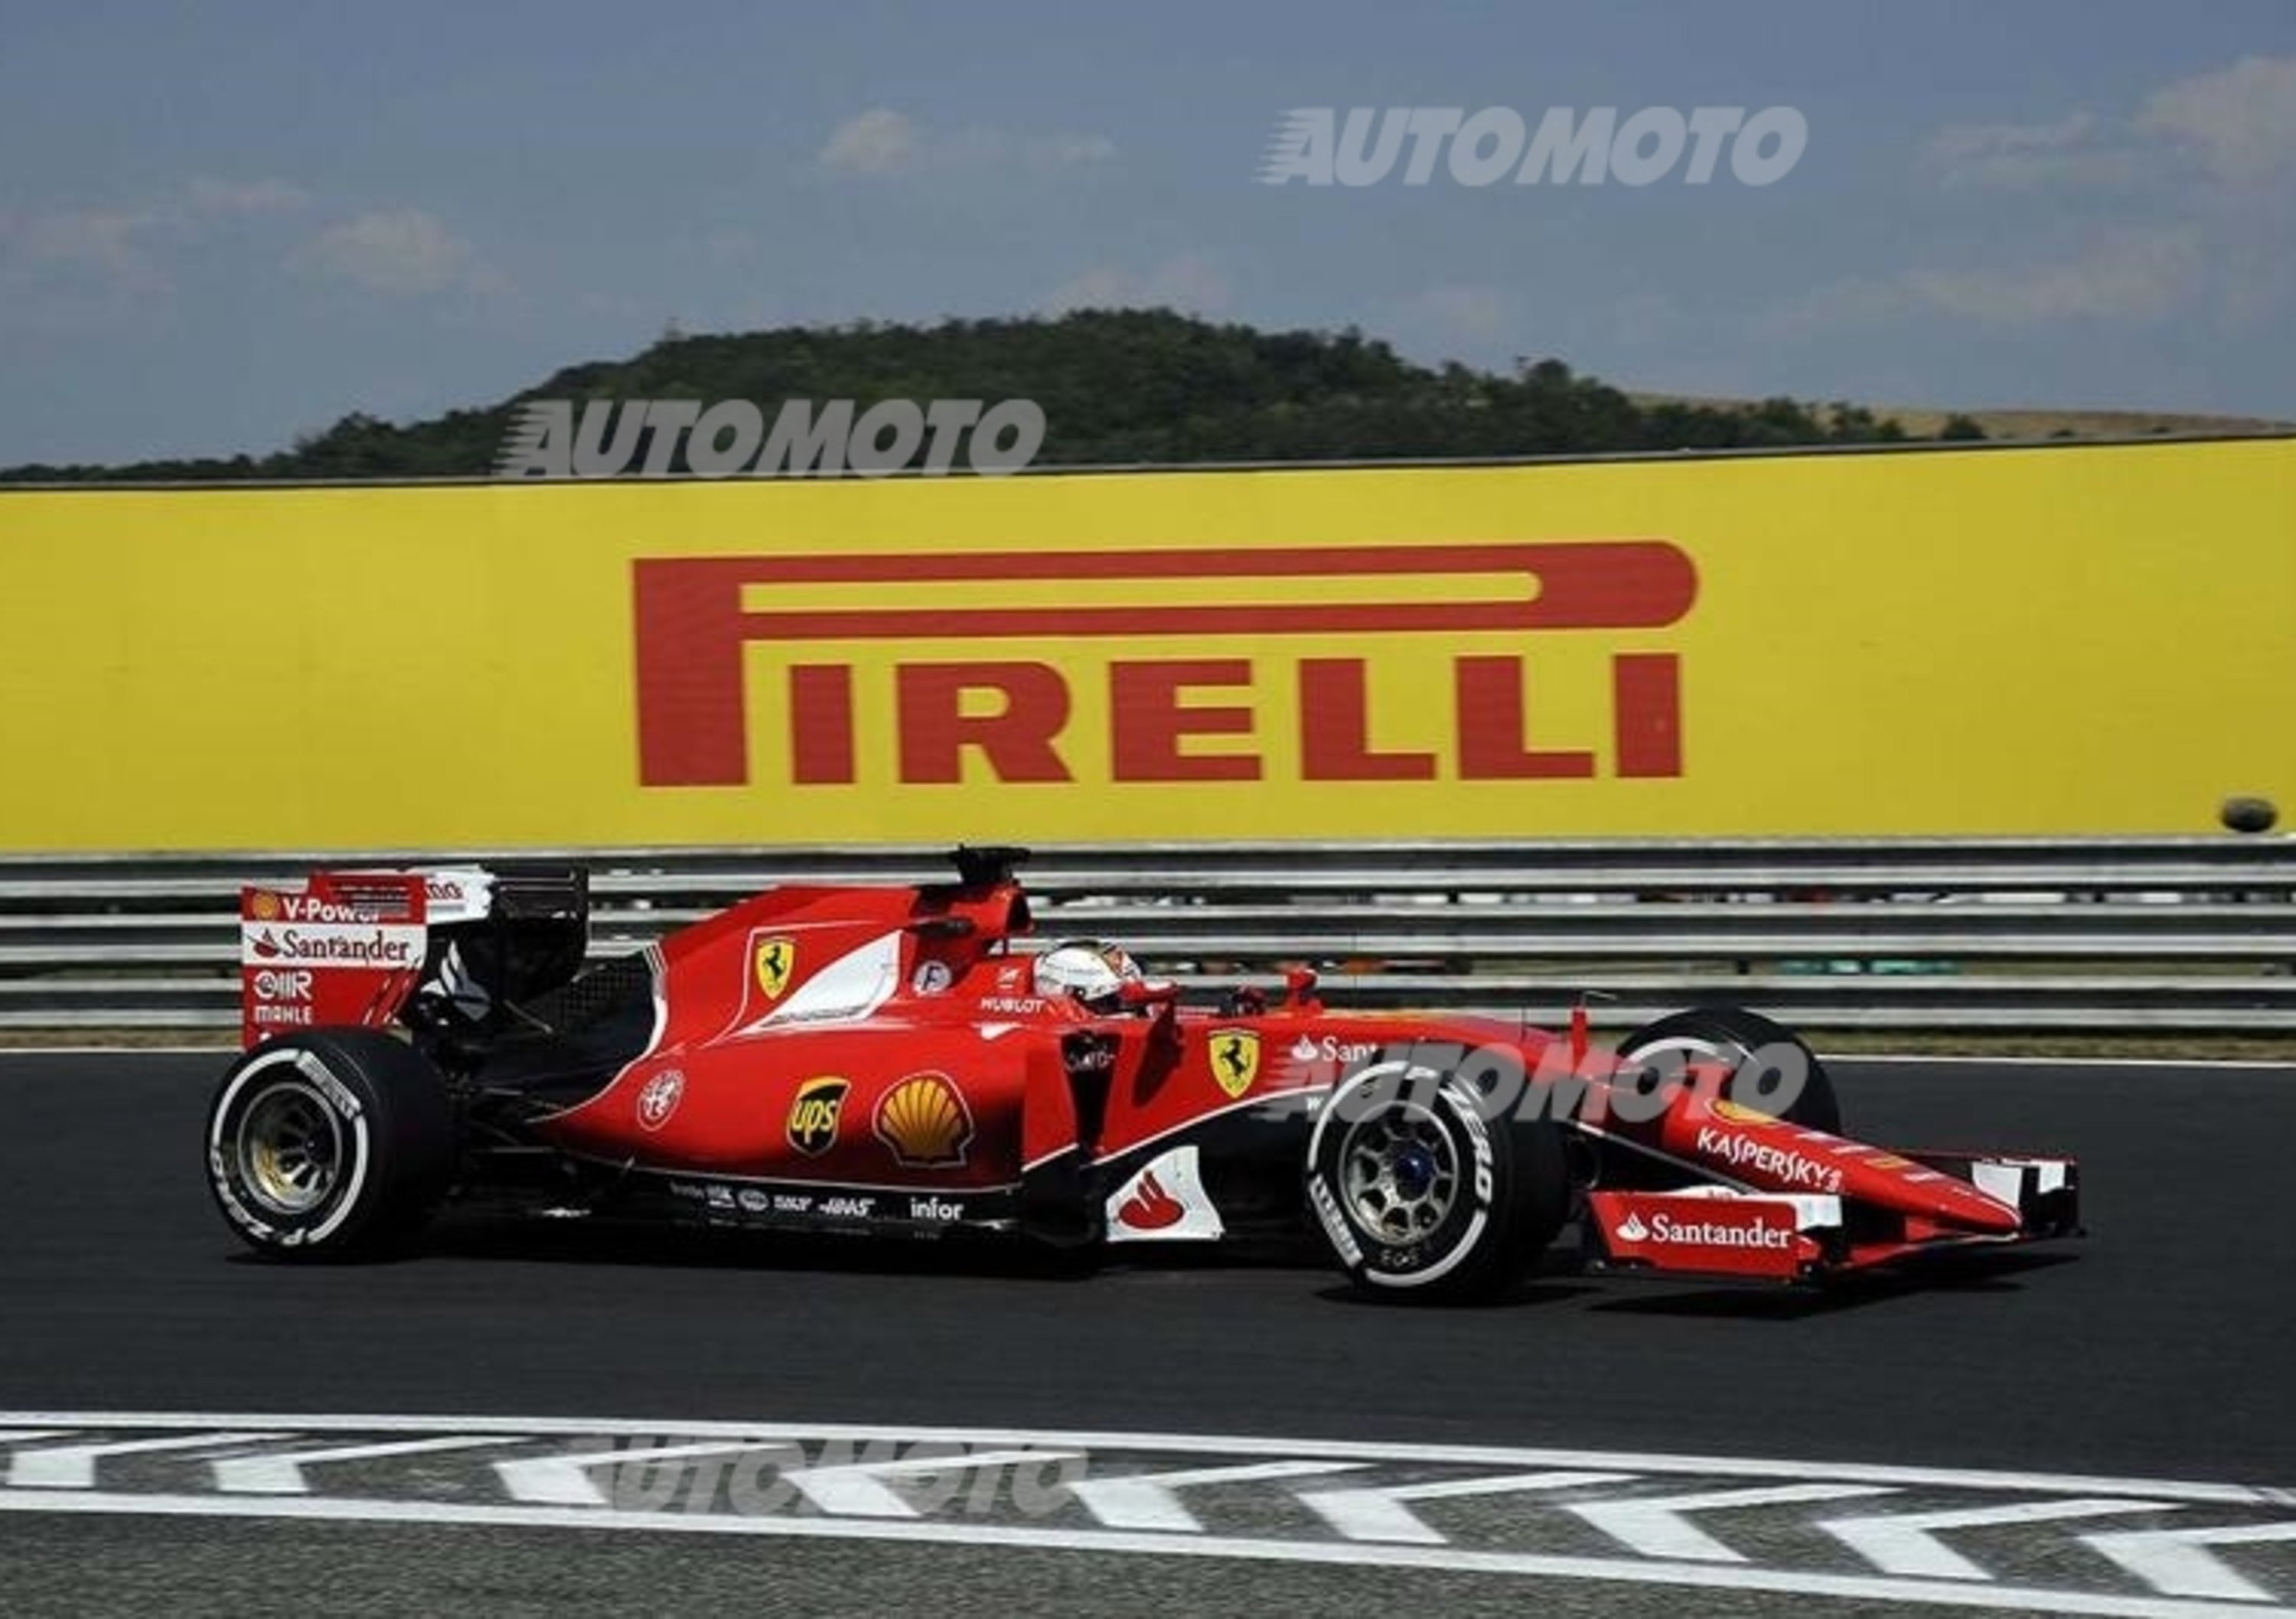 F1, Gp Ungheria 2015, Vettel: &laquo;Abbiamo ottenuto il miglior risultato possibile&raquo;